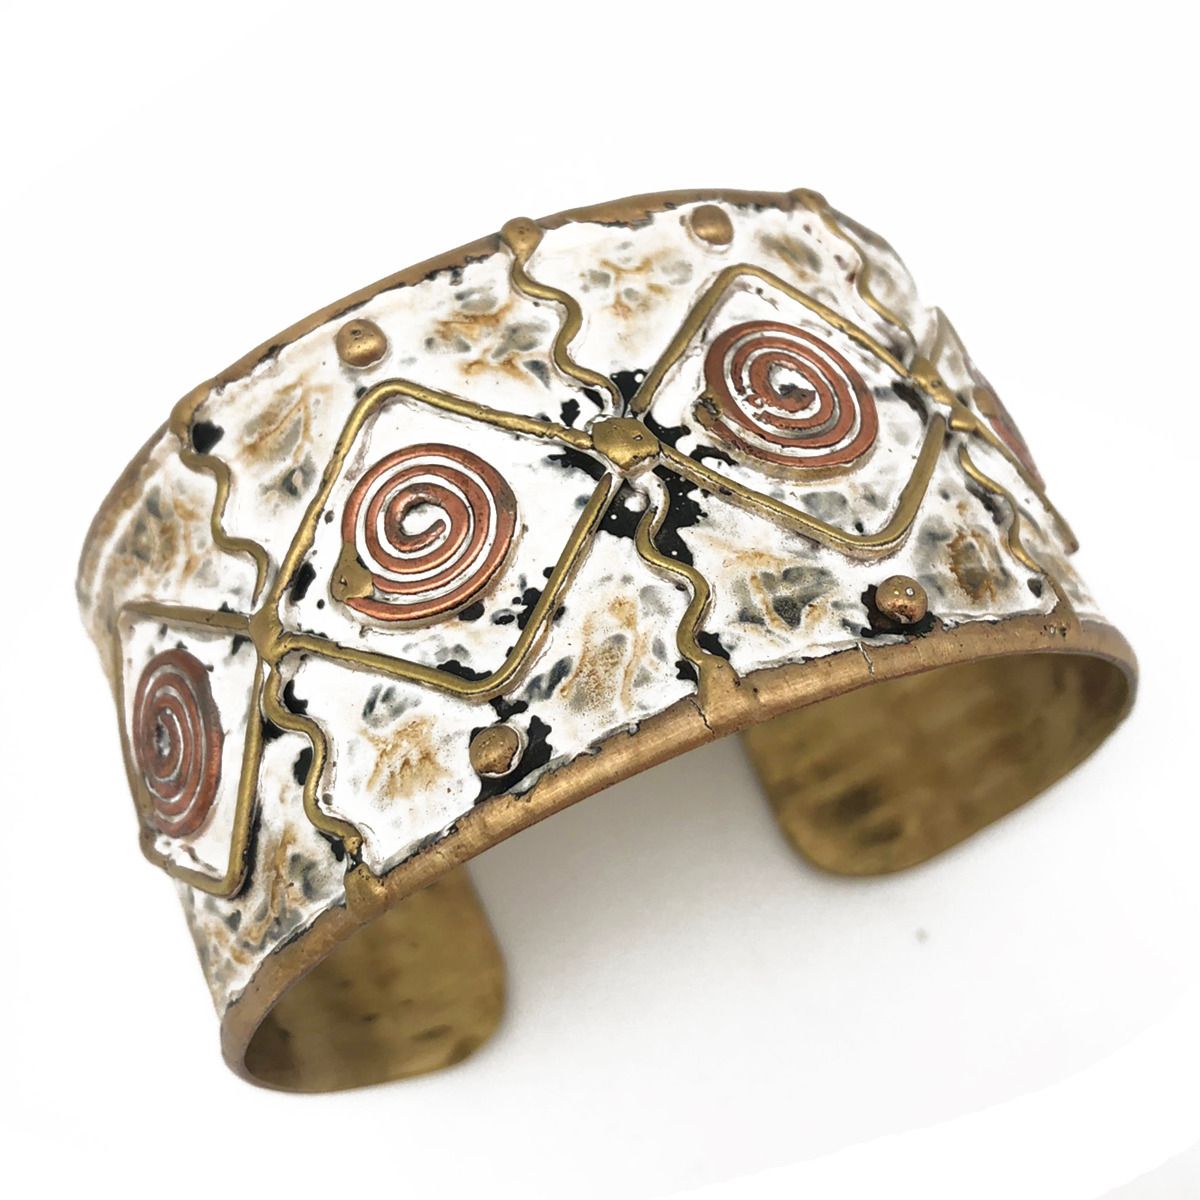 Copper Swirl Patina cuff bracelet